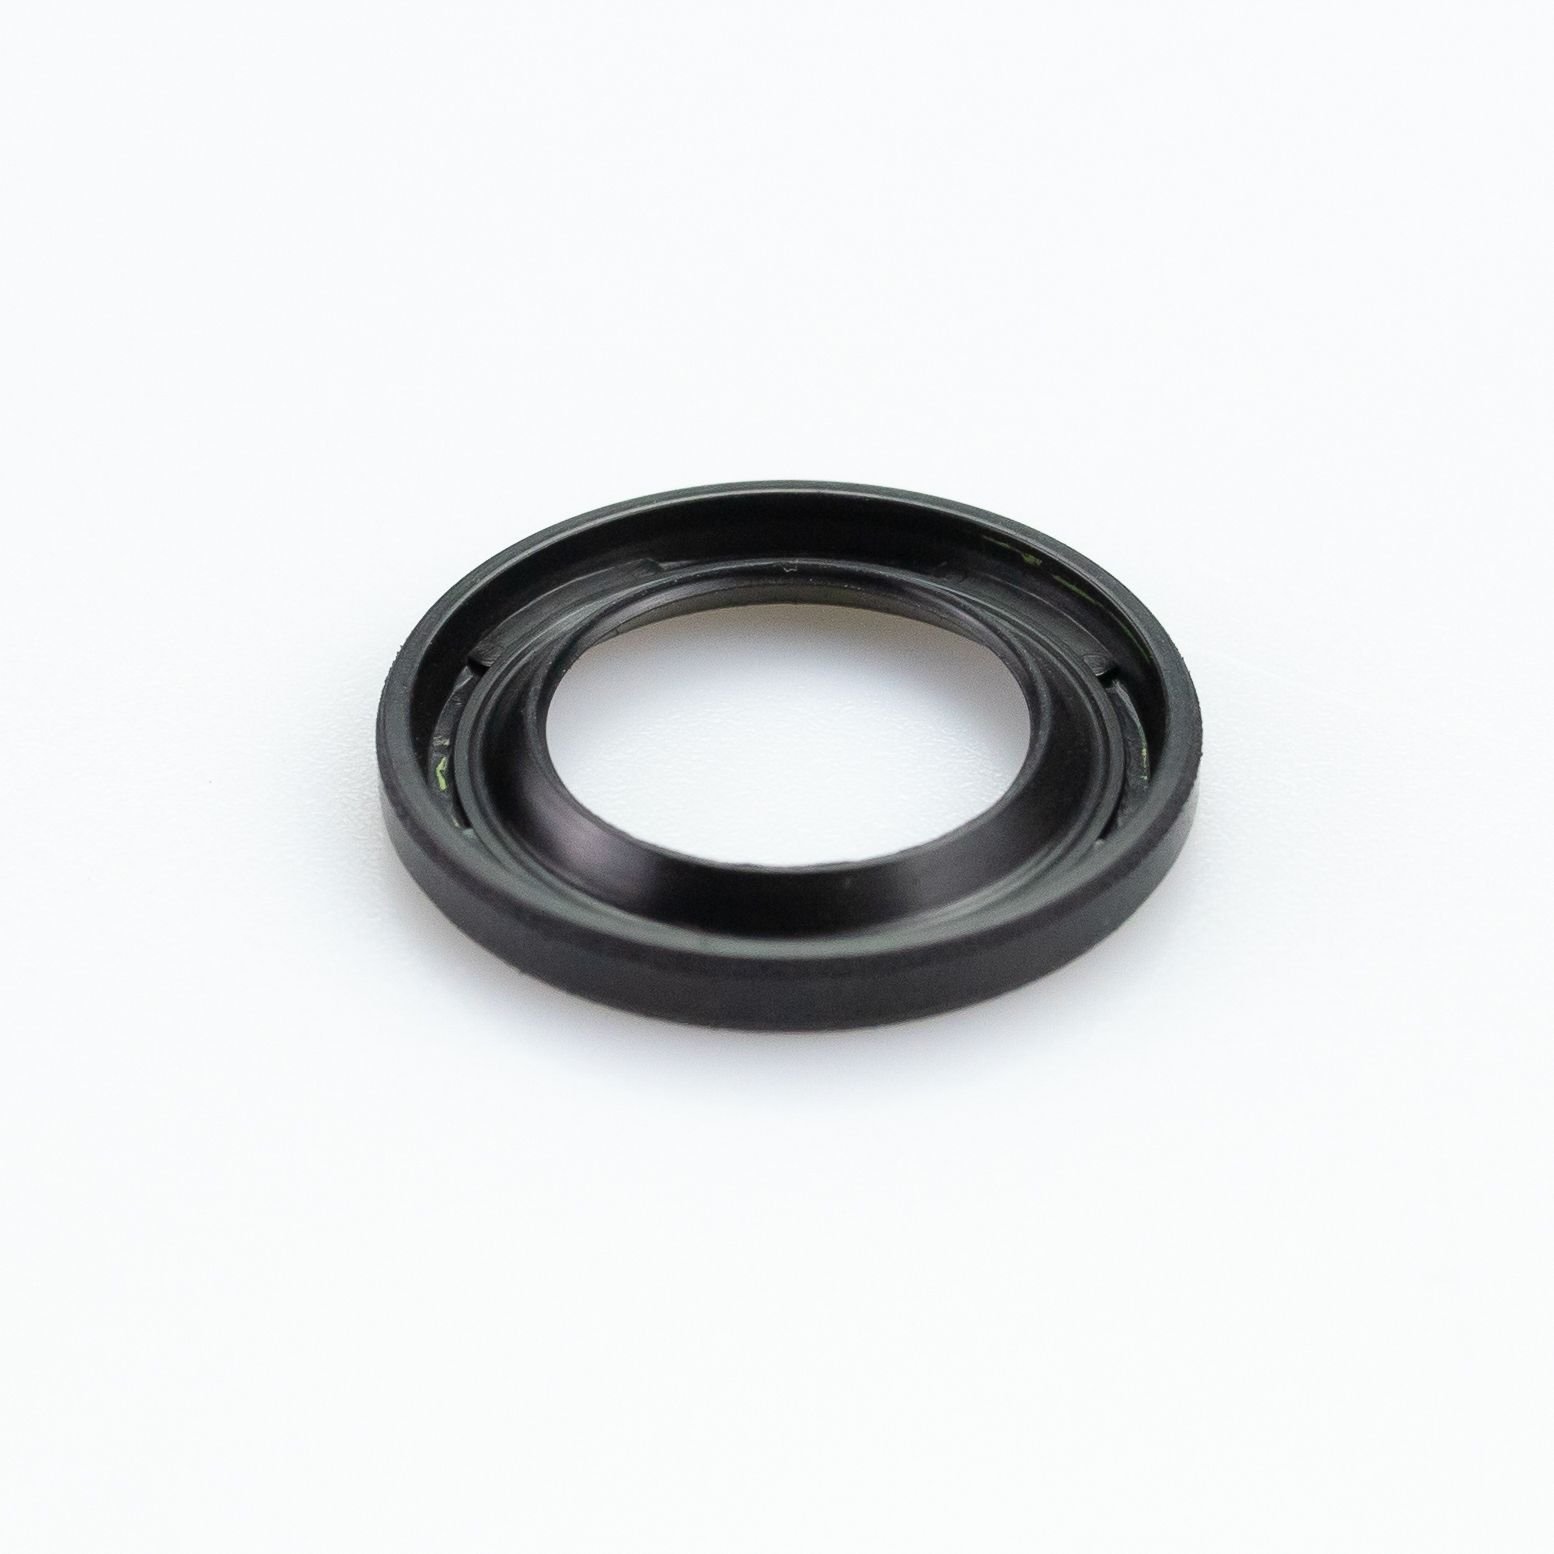 Obrázek produktu RCU bearing body KYB 120030000301 dust seal pravý